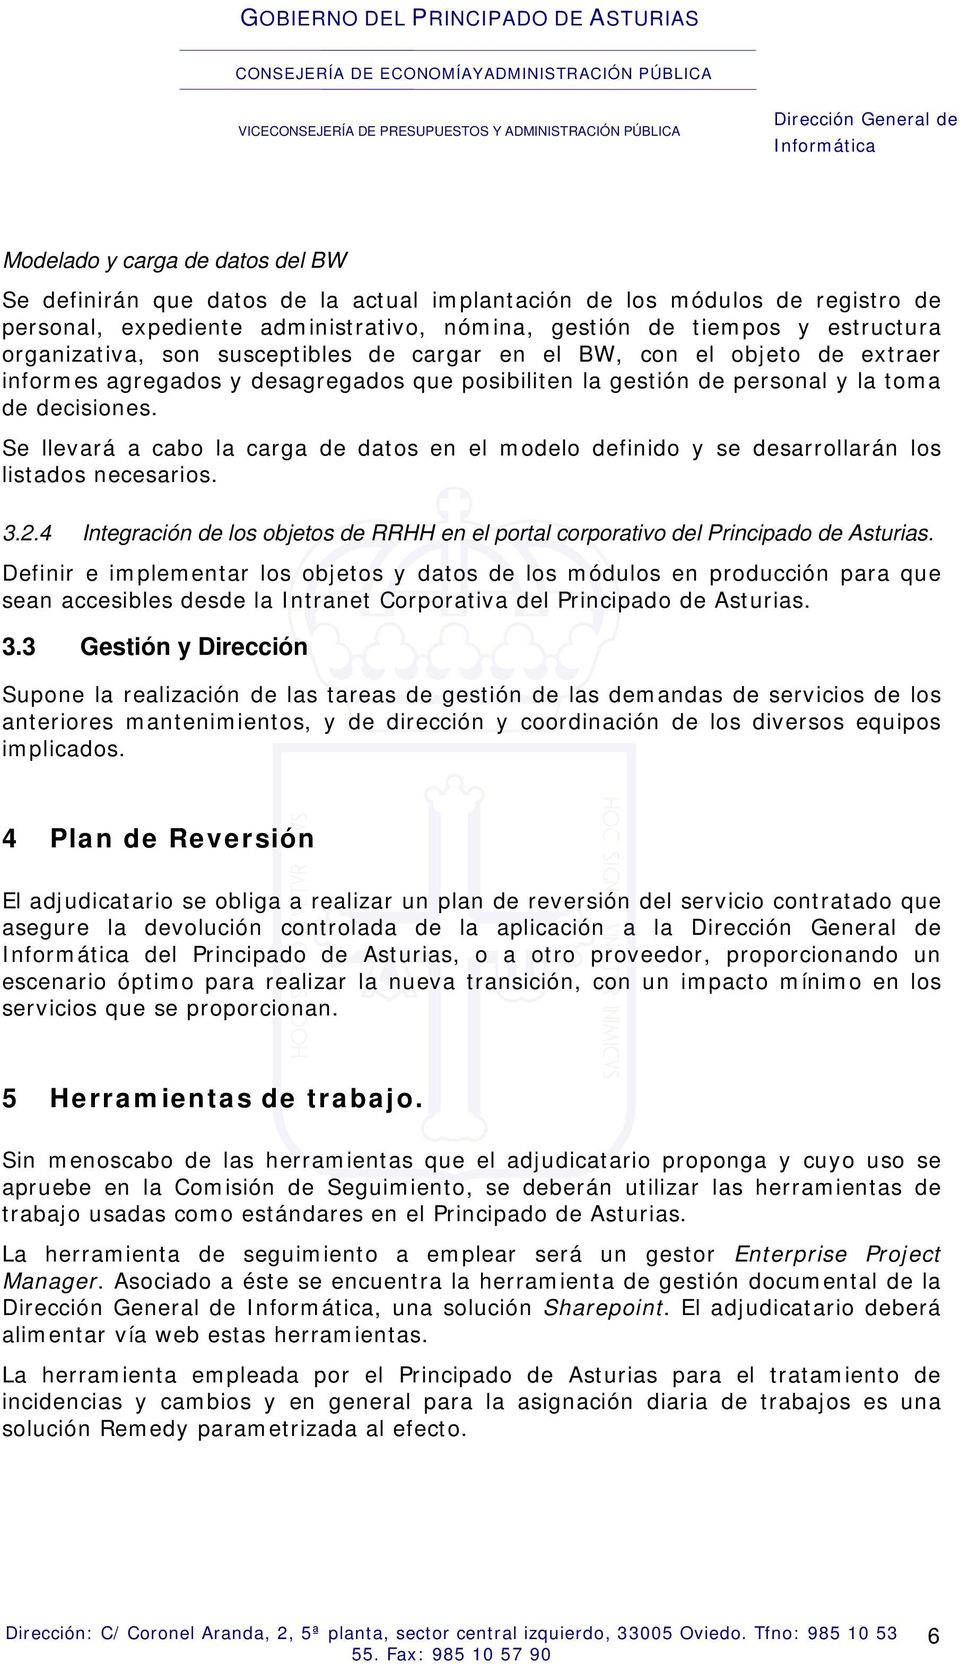 Se llevará a cabo la carga de datos en el modelo definido y se desarrollarán los listados necesarios. 3.2.4 Integración de los objetos de RRHH en el portal corporativo del Principado de Asturias.